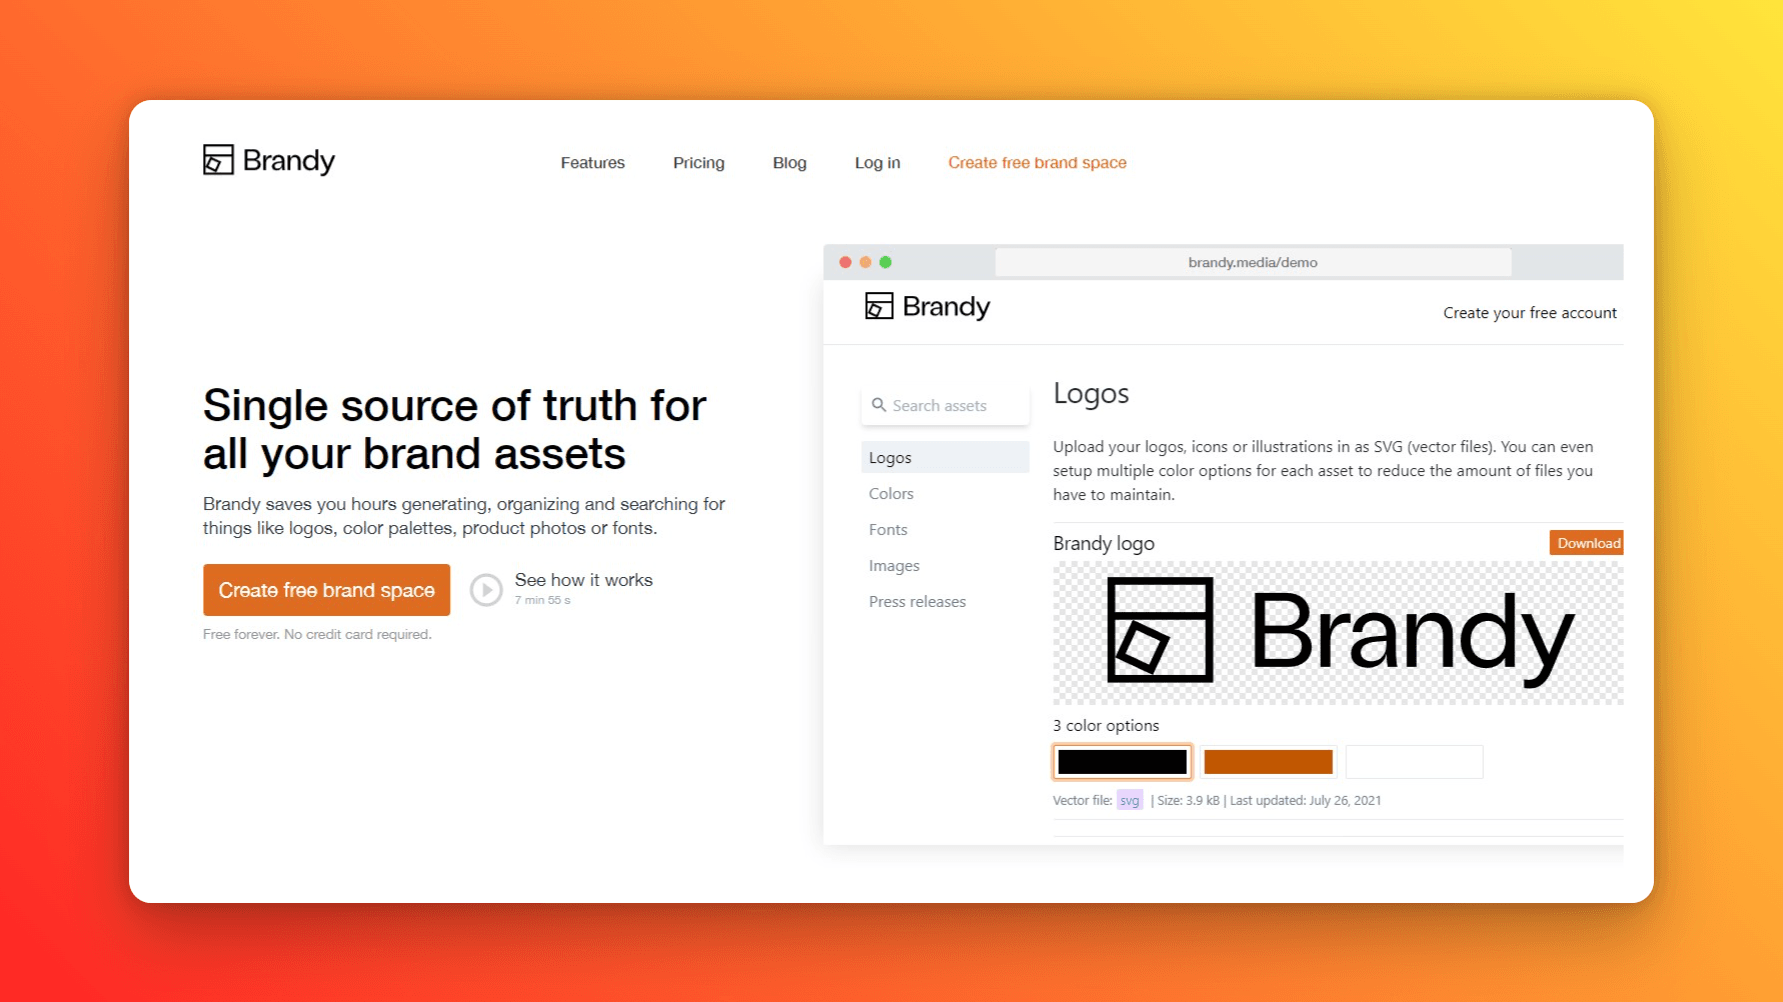 Brandy website homepage screenshot